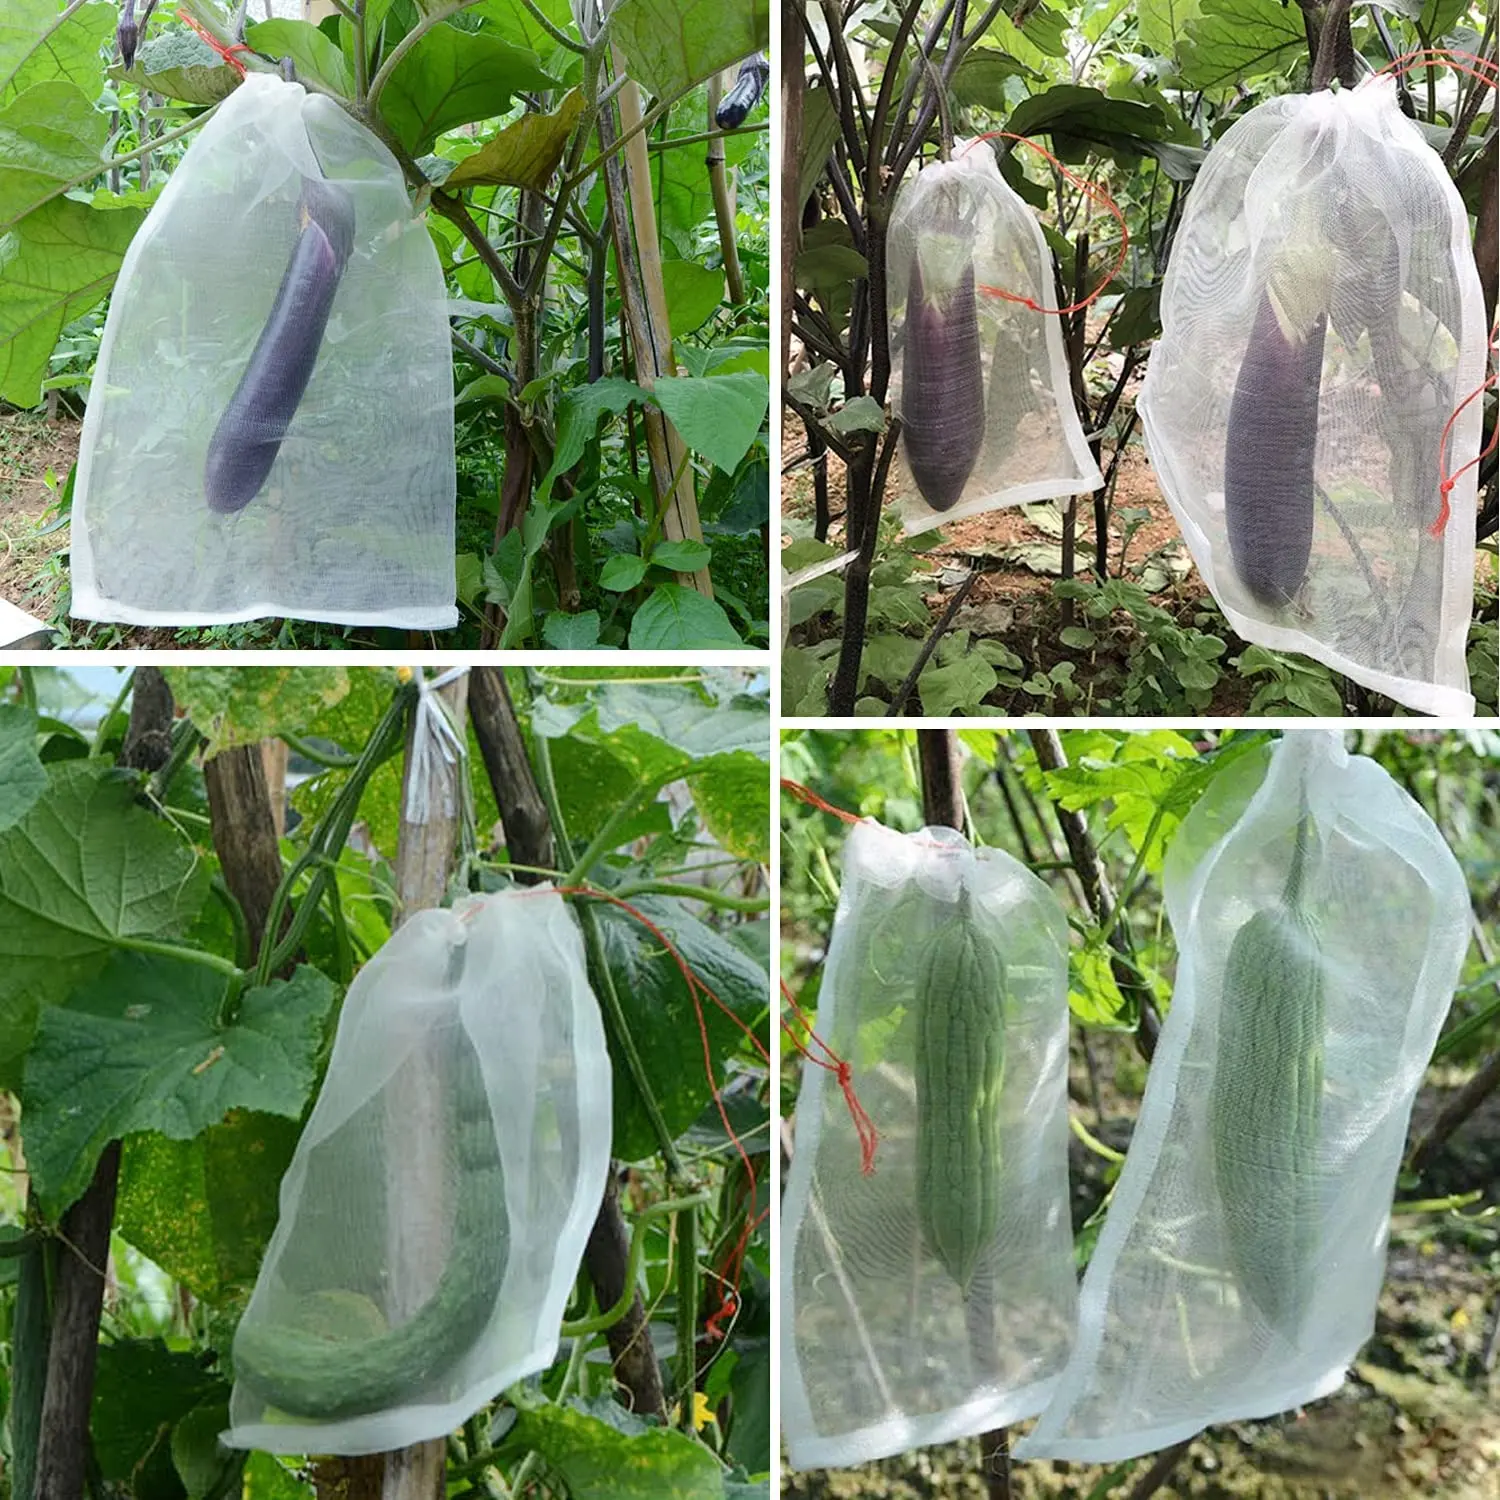 Polyethyleen Insectengaaszak Tuinnetzakken Met Trekkoordgaas Voor Het Beschermen Van Fruit En Groente